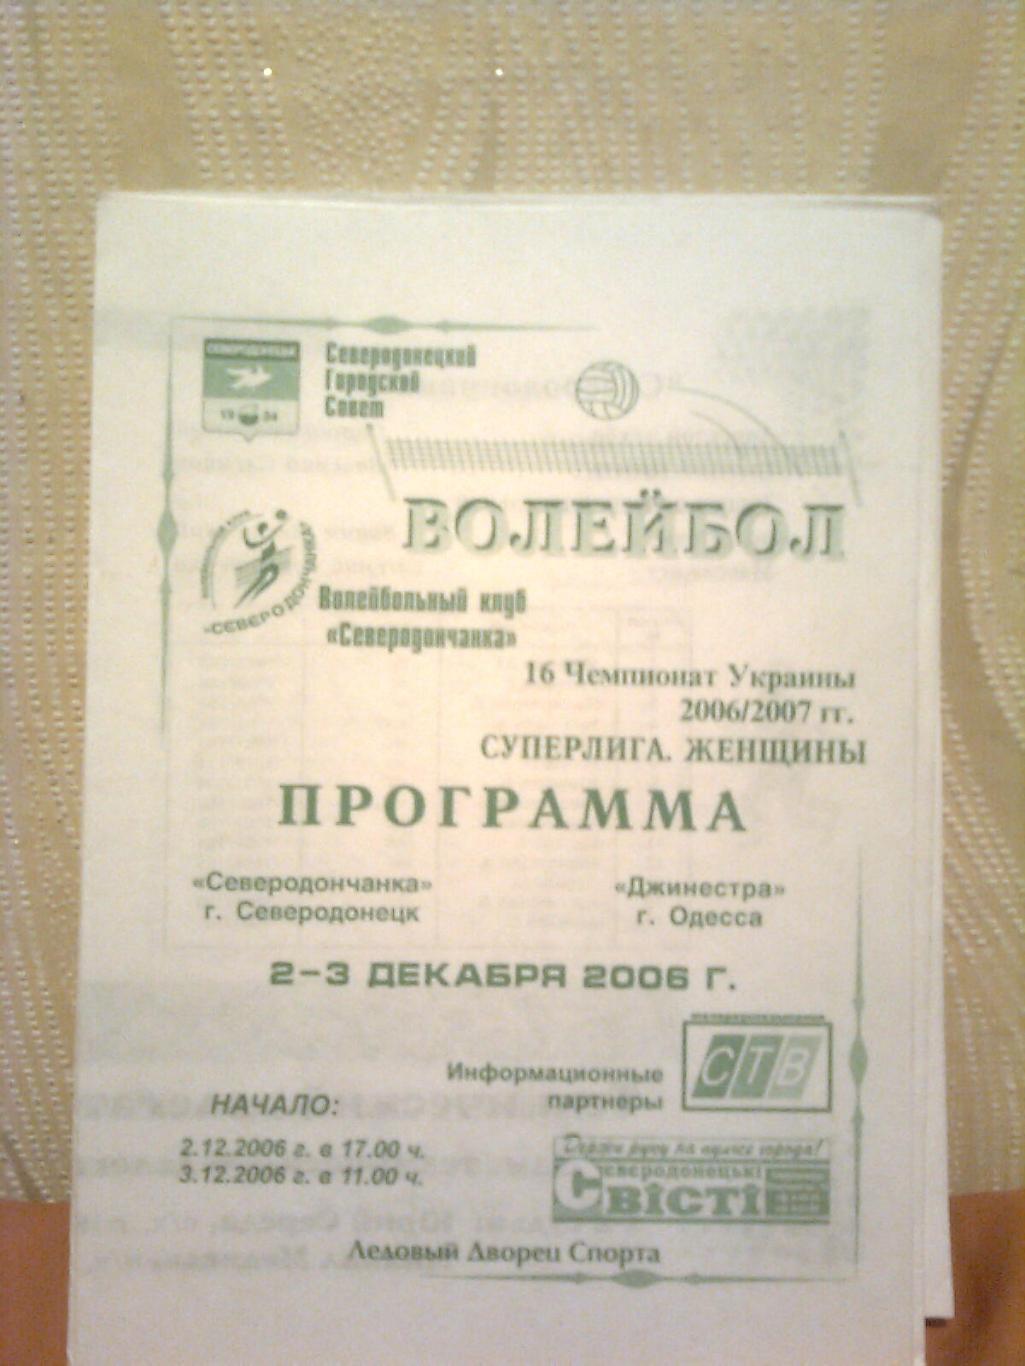 Чемпионат Украины. Северодончанка-Джинестра (Одесса) 2-3 декабря 2006 г.